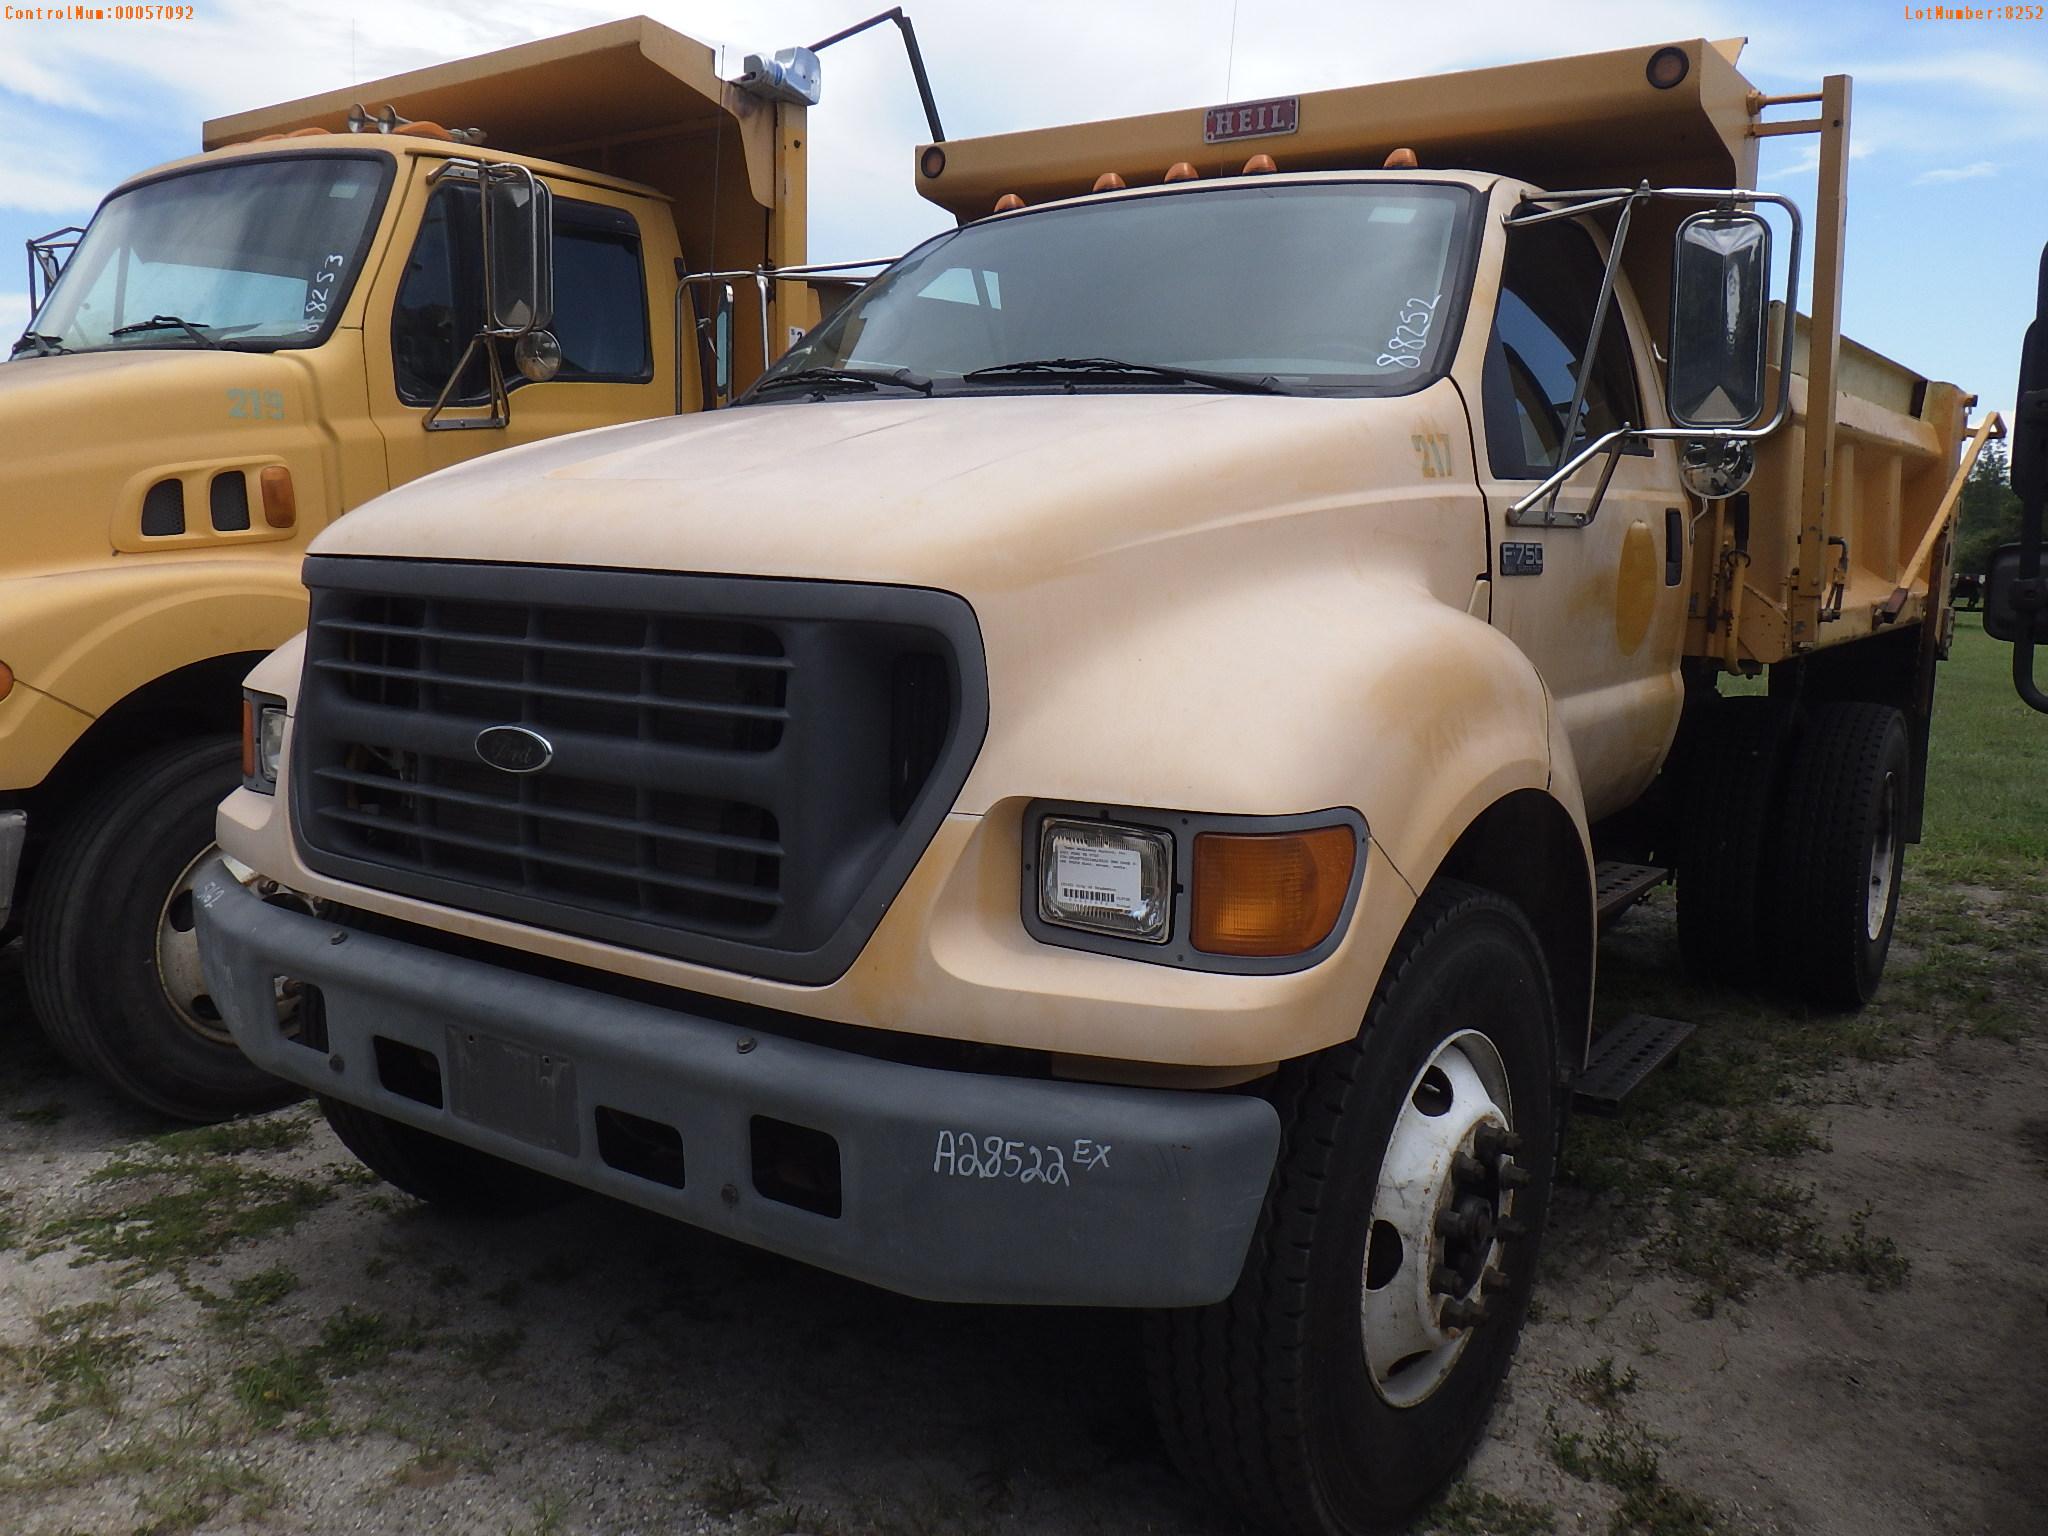 8-08252 (Trucks-Dump)  Seller: Gov-City of Bradenton 2001 FORD F750